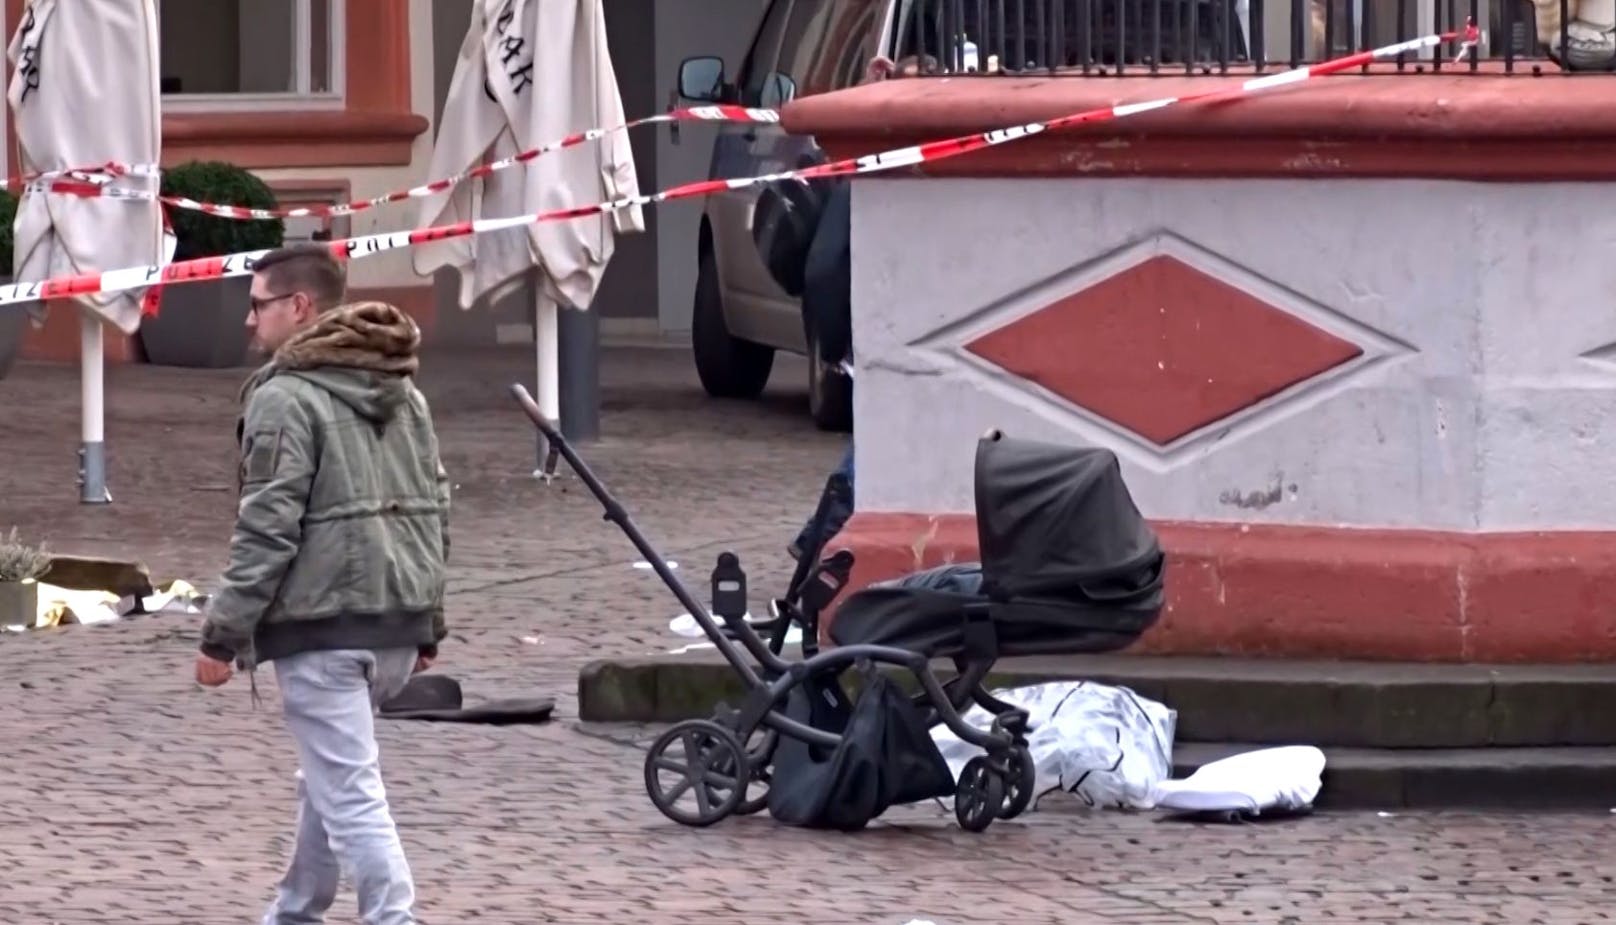 Bei dem Vorfall in Trier am Dienstagnachmittag sind ein 45-jähriger Vater und seine neuneinhalb Wochen alte Tochter ums Leben gekommen.